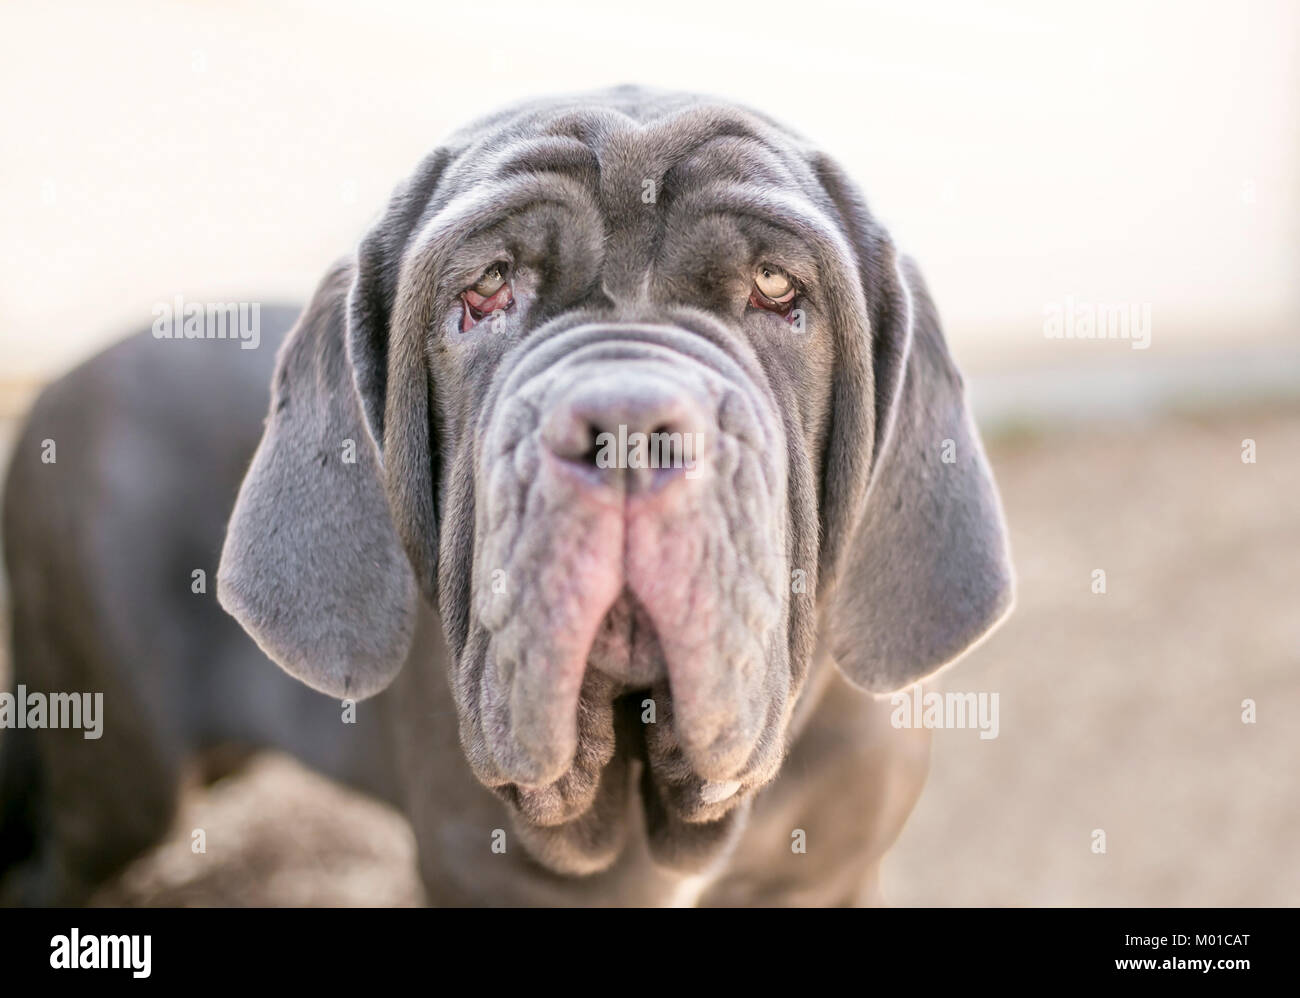 A Neapolitan Mastiff dog Stock Photo